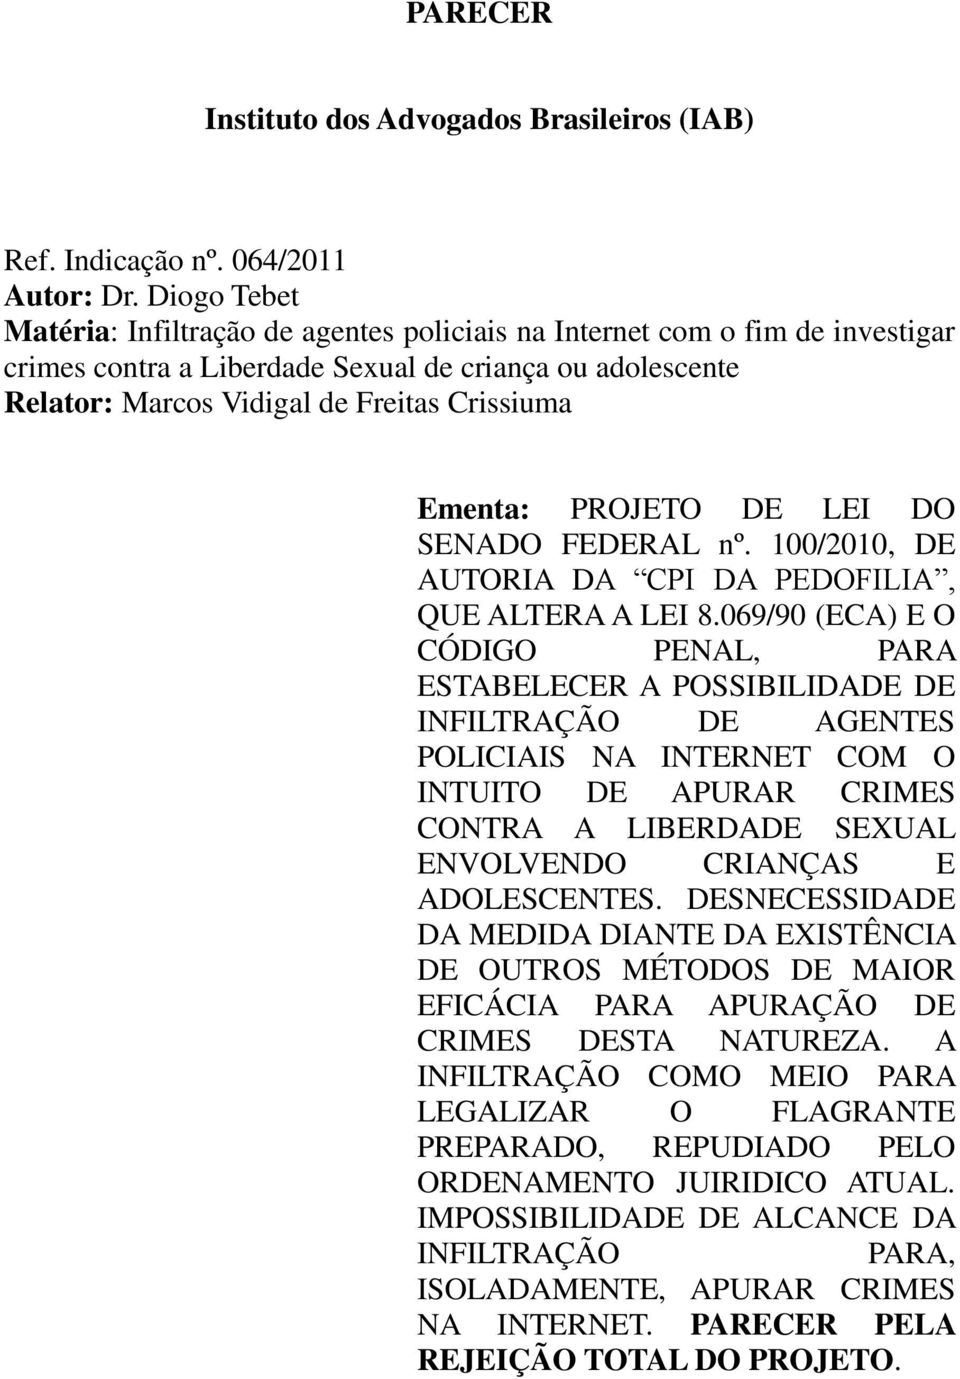 Ementa: PROJETO DE LEI DO SENADO FEDERAL nº. 100/2010, DE AUTORIA DA CPI DA PEDOFILIA, QUE ALTERA A LEI 8.